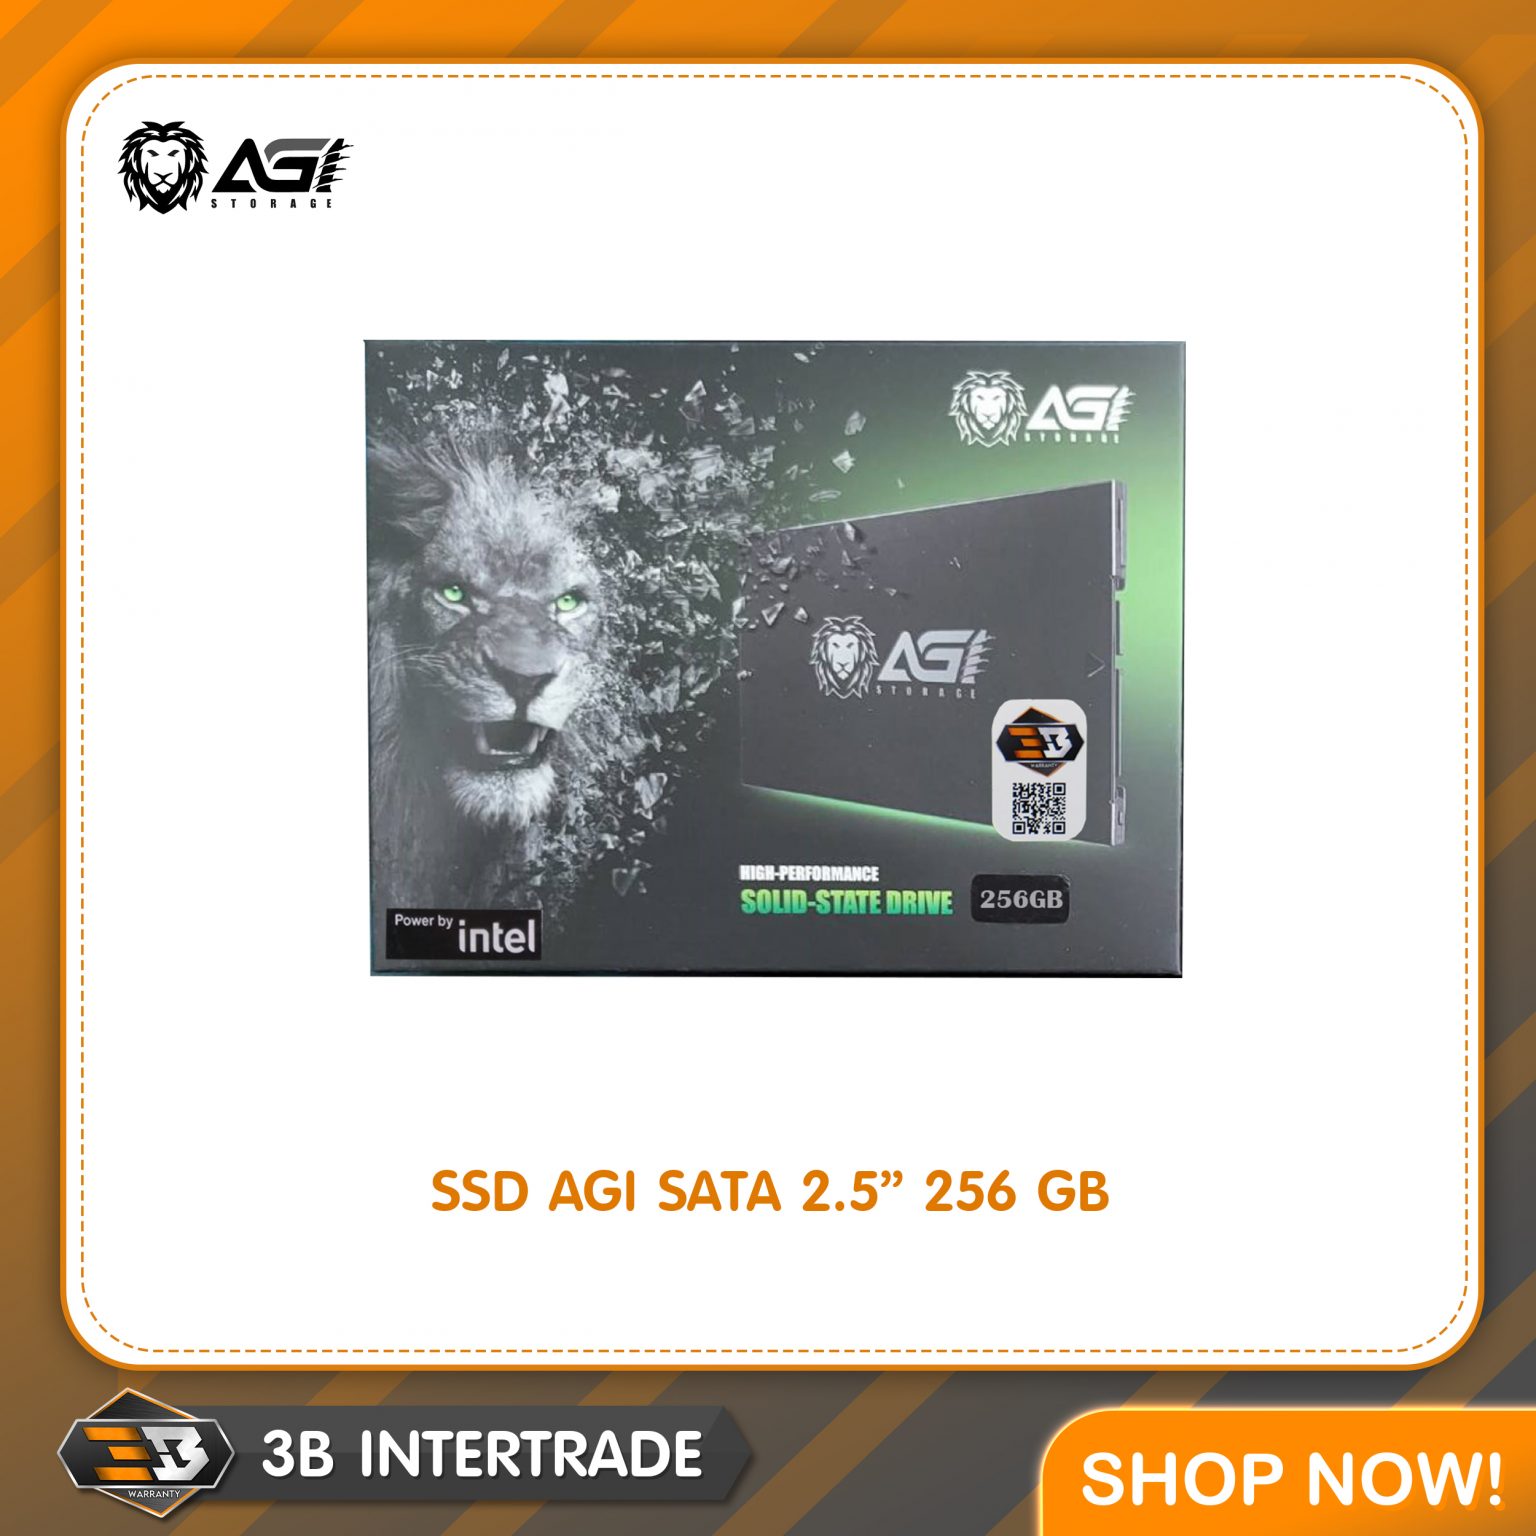 SSD AGI SATA 256GB 2.5″ (AGI256G06AI138)